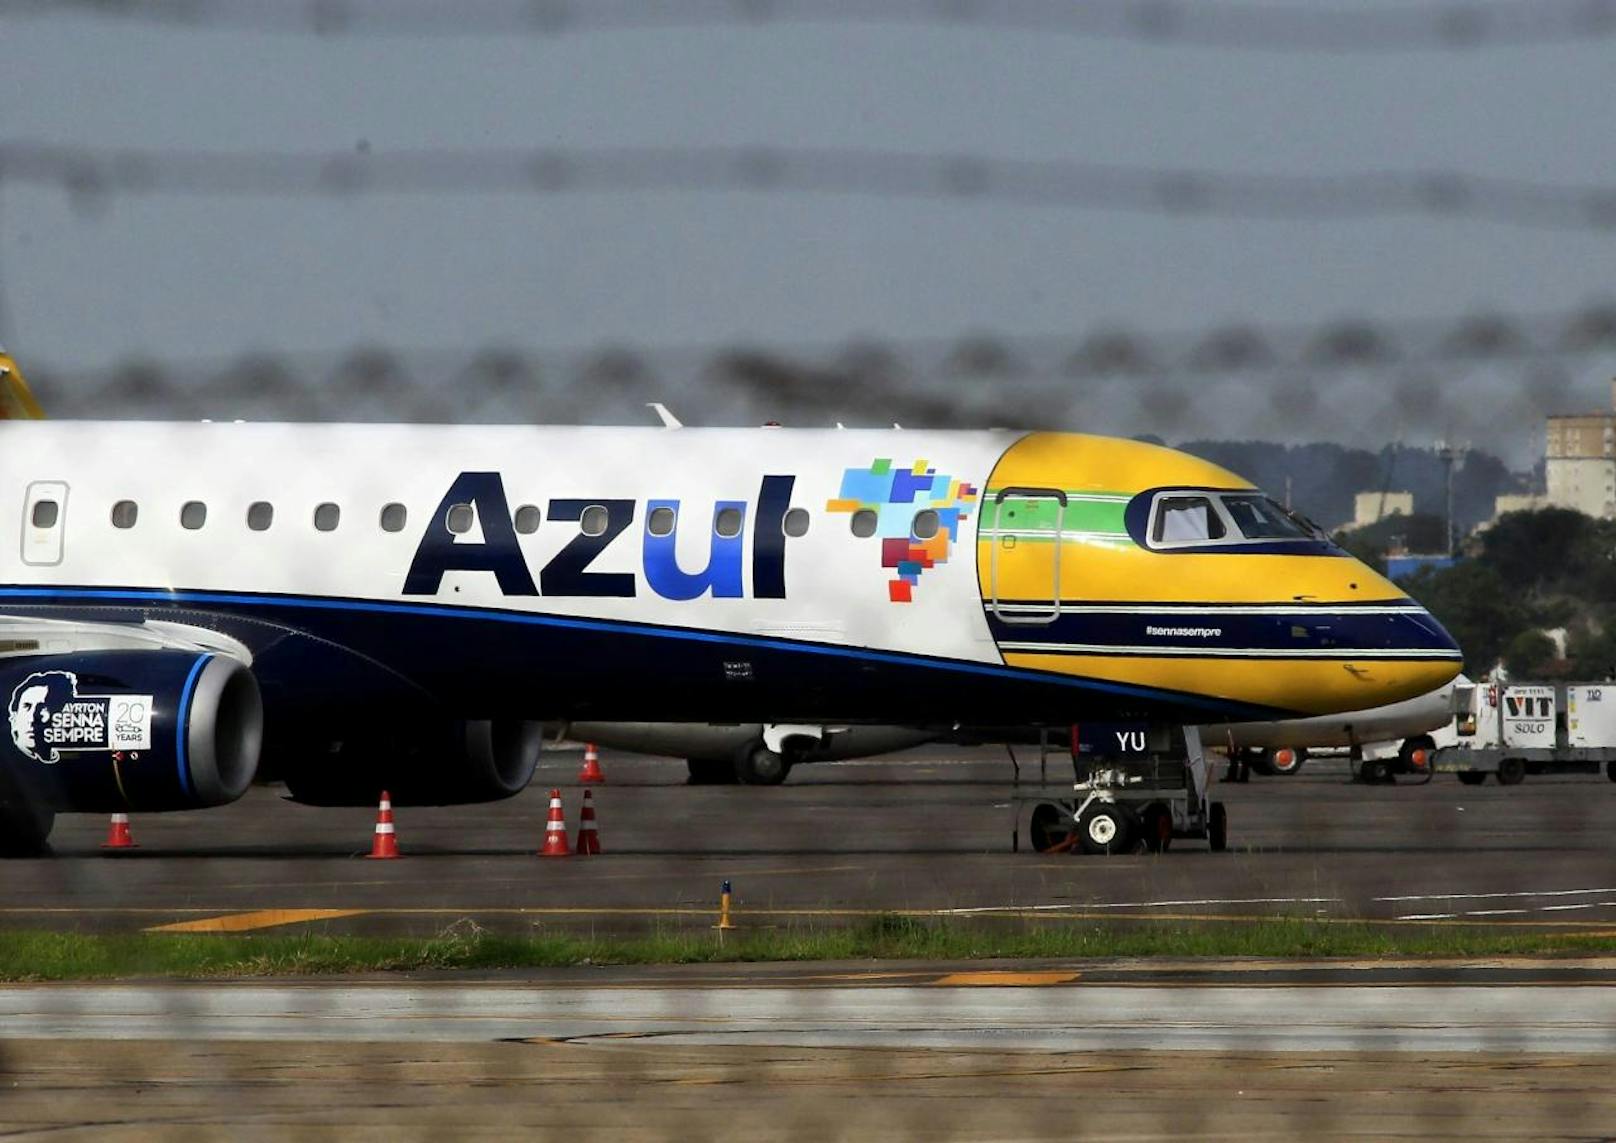 <b>Platz 9: Azul, Brasilien</b>
Tripadvisor-Bewertung: "Der Service ist effizient und man bekommt jedes Mal ein Päckchen Aviõezinhos (Gummibärchen in Flugzeugform), die man bei den kurzen Inlandstopps naschen kann."